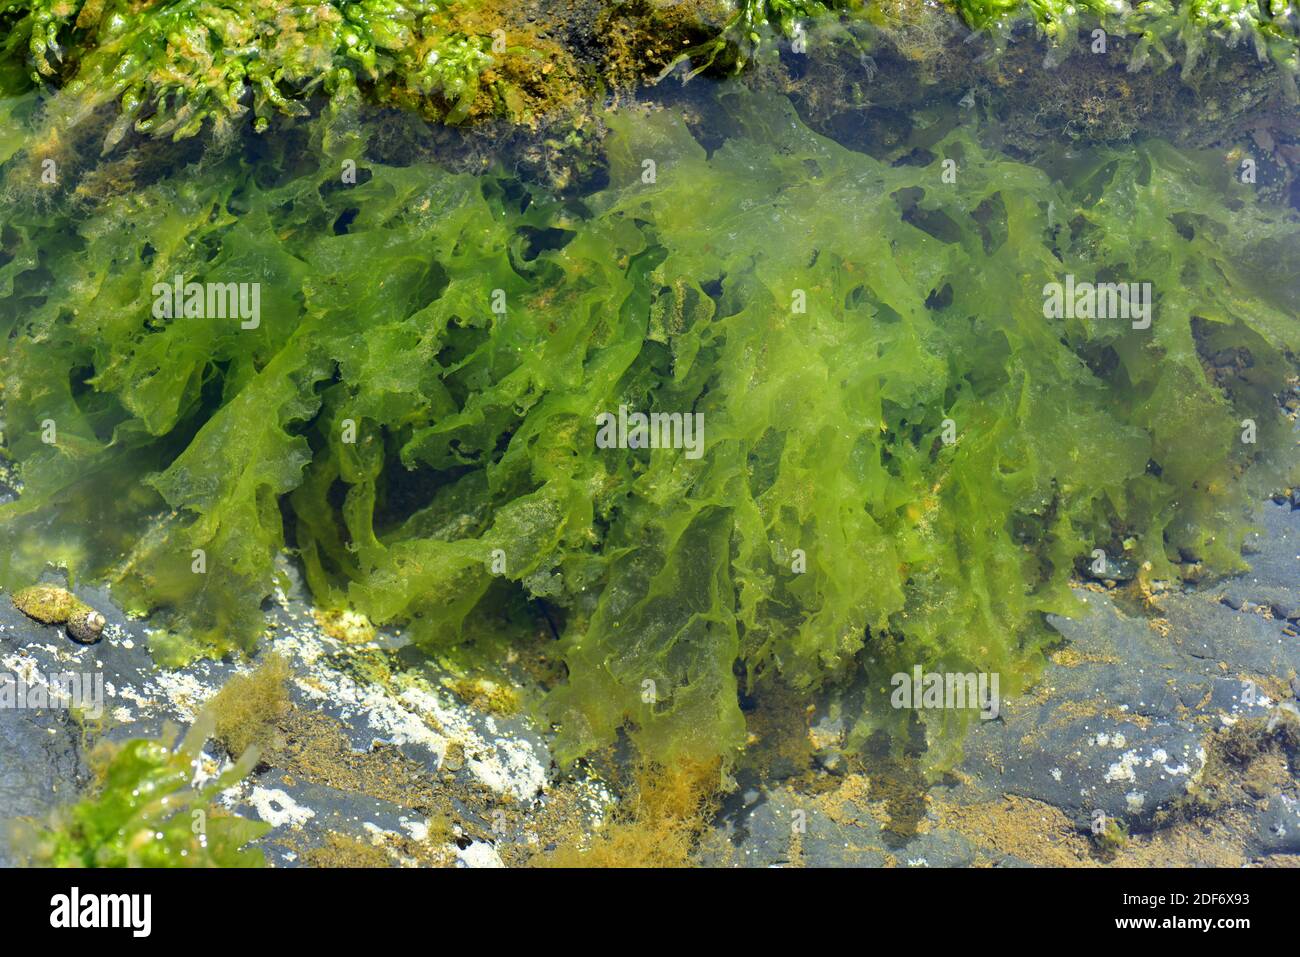 La lattuga marina (Ulva lattuga) è un'alga verde commestibile. Questa foto è stata scattata a Cap Ras, provincia di Girona, Catalogna, Spagna. Foto Stock